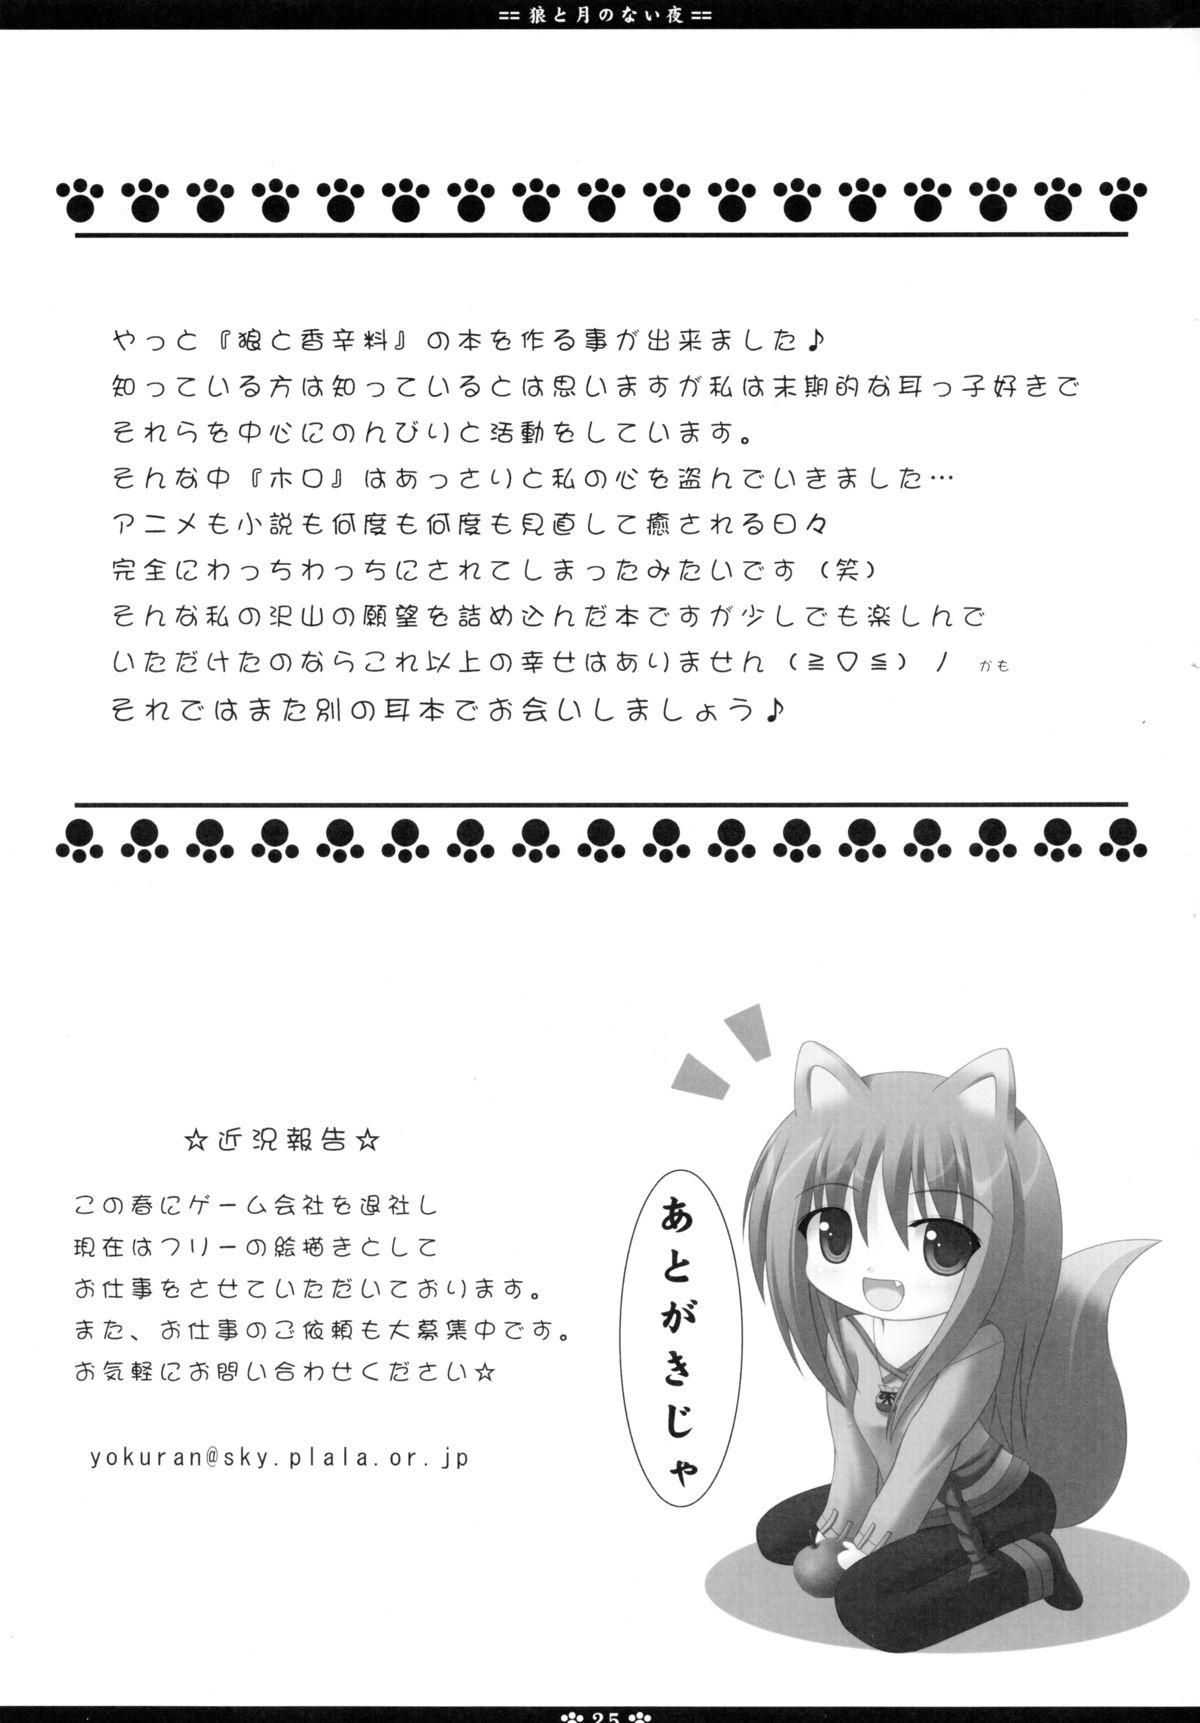 Lolicon Ookami to Tsuki no Nai Yoru - Spice and wolf Facebook - Page 25